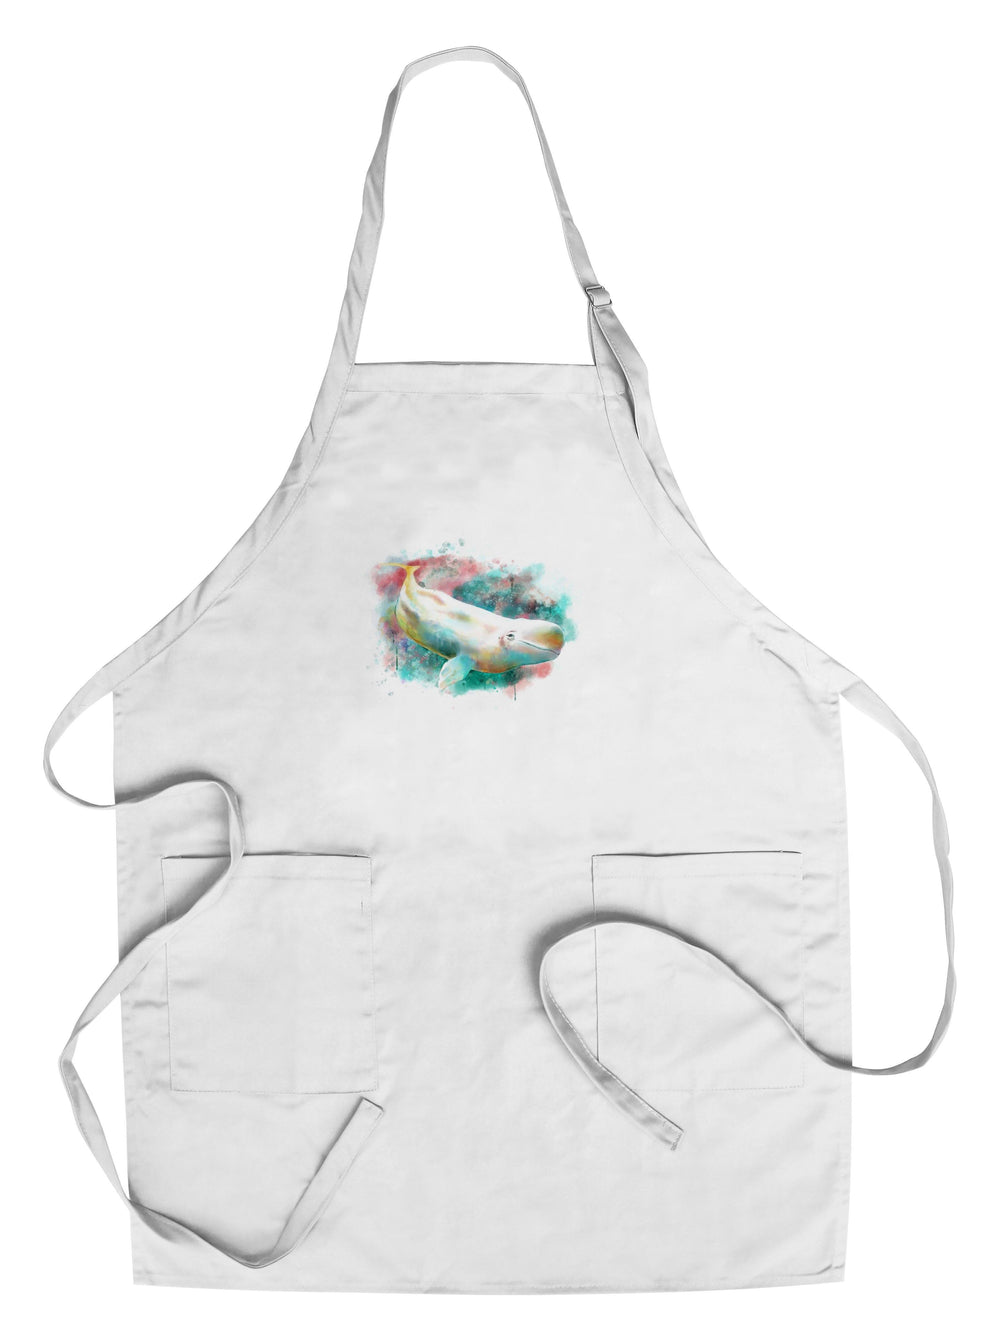 Beluga Whale, Watercolor, Lantern Press Artwork, Towels and Aprons Kitchen Lantern Press 